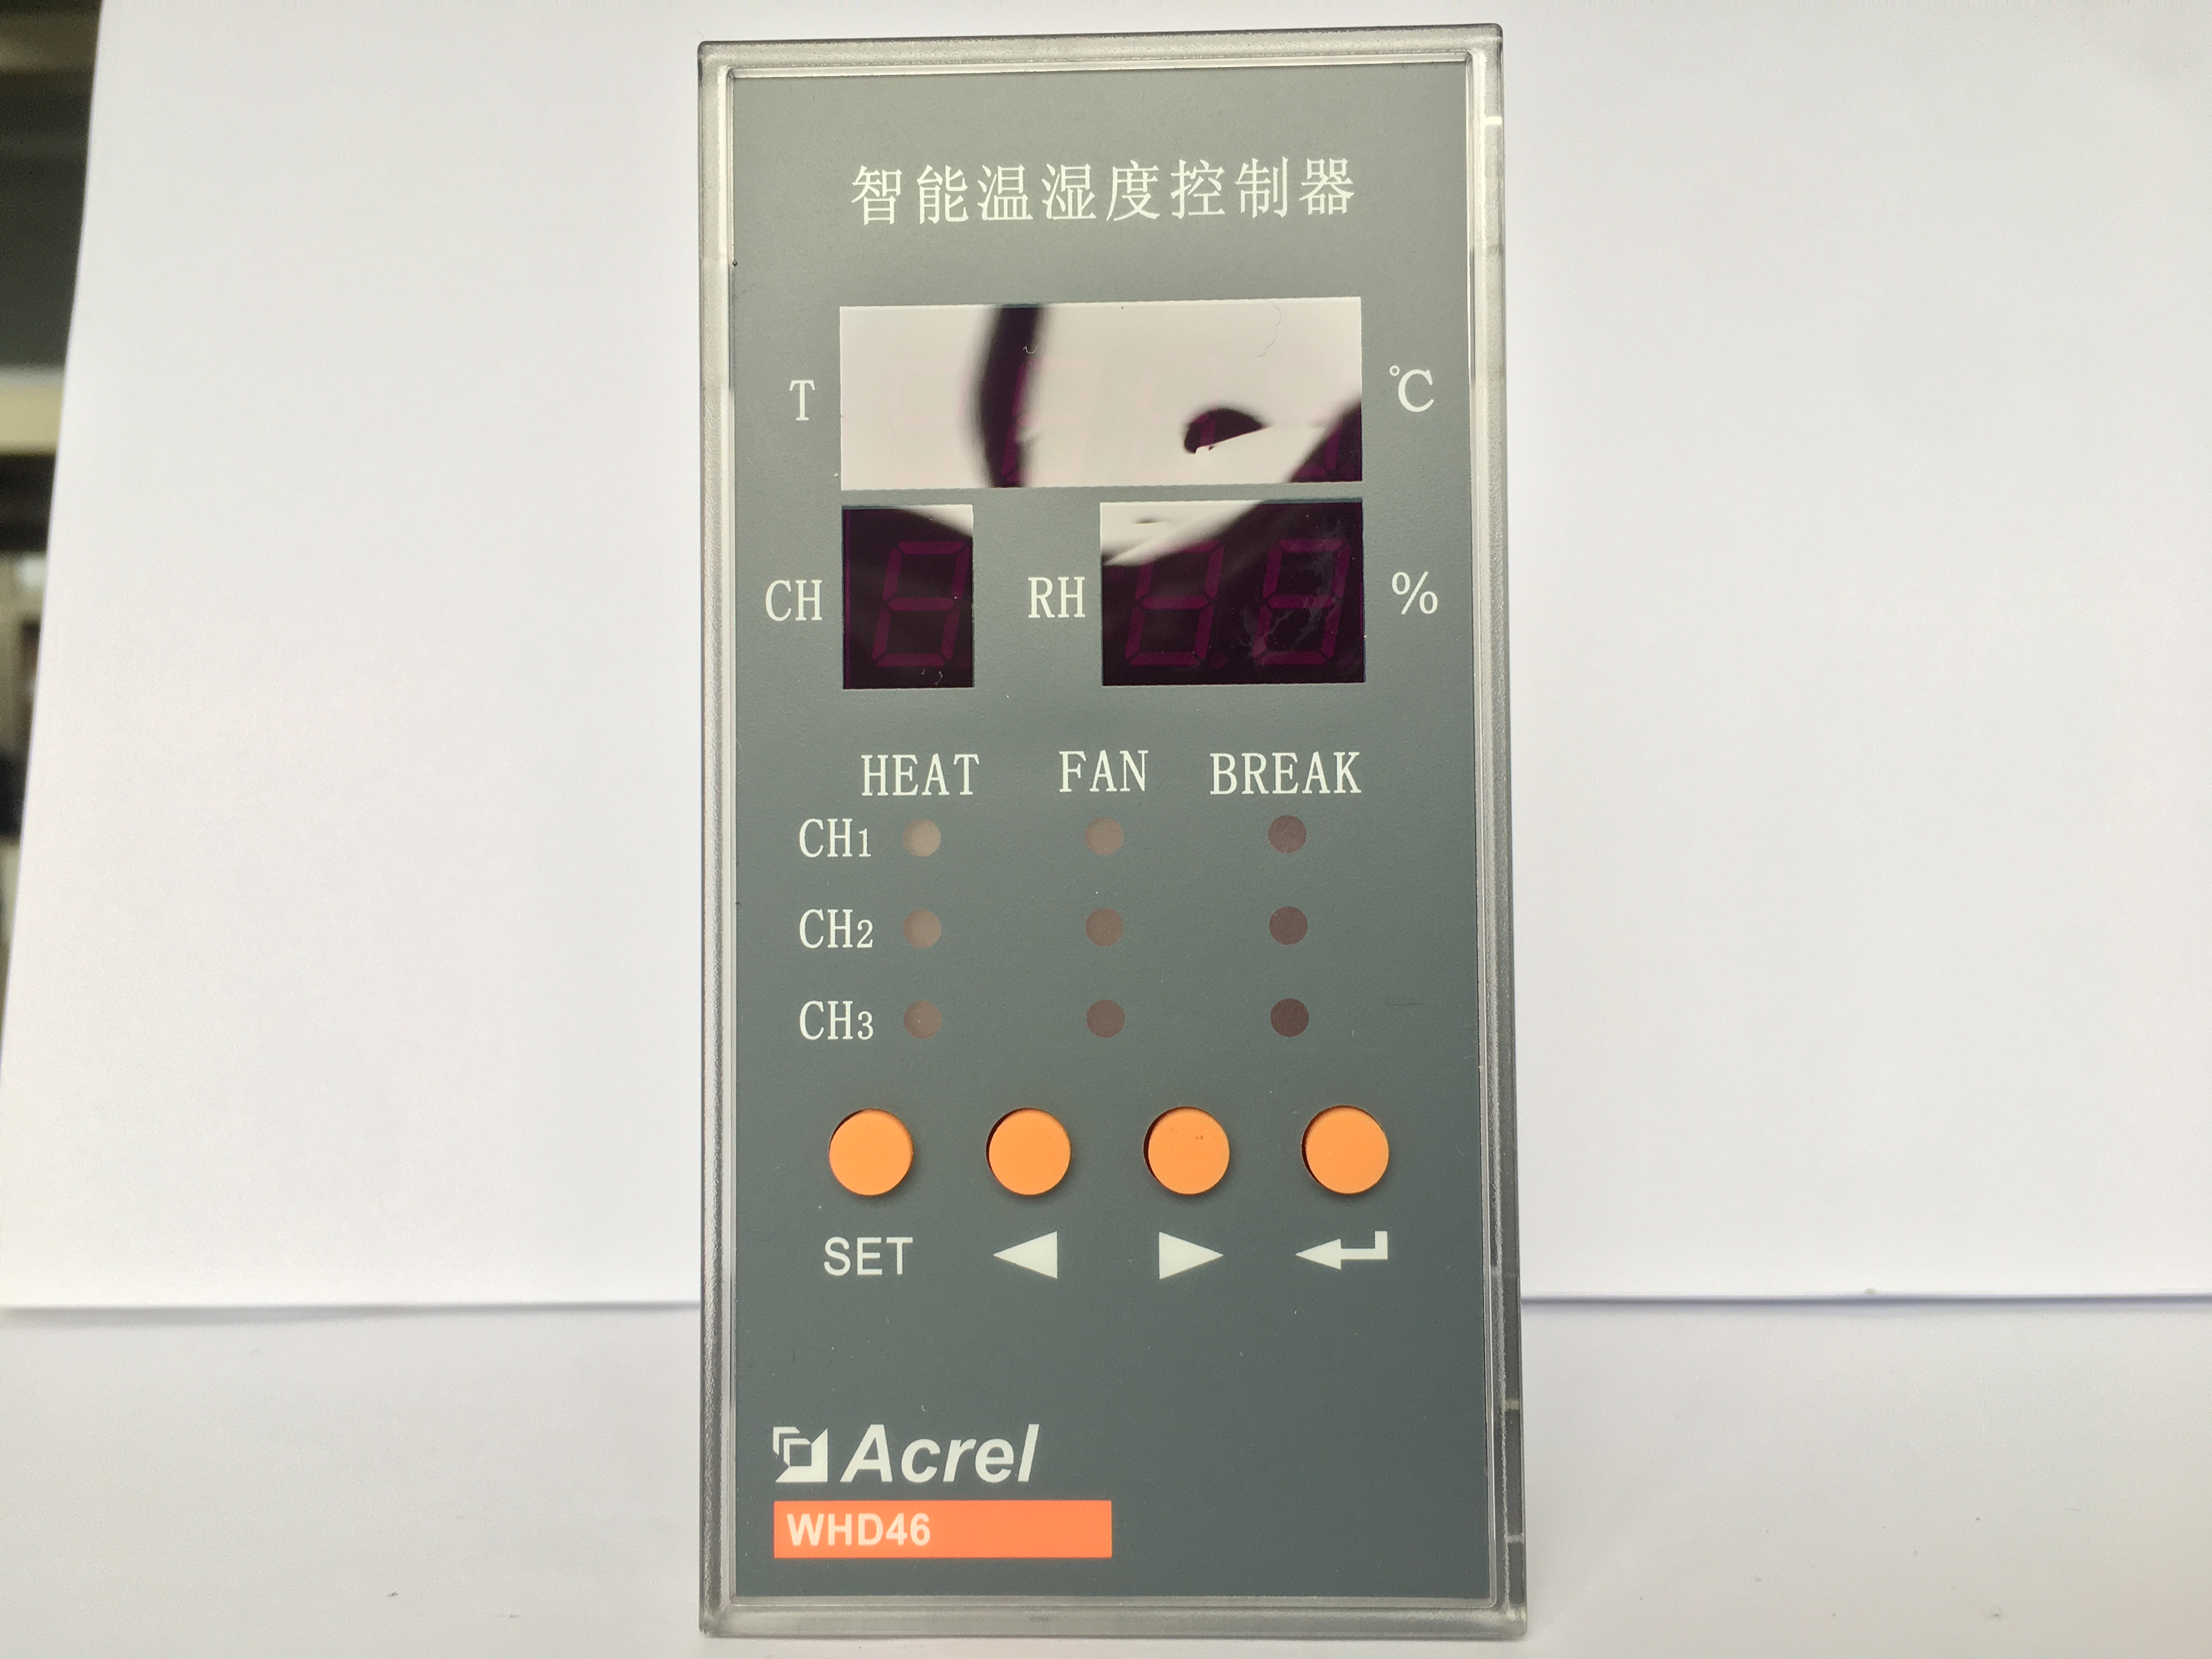 安科瑞 WHD46-33/M 環網柜溫濕度控制器 測量并顯示控制3路溫度、3路濕度 DC4-20mA變送輸出 防凝露爬電事故